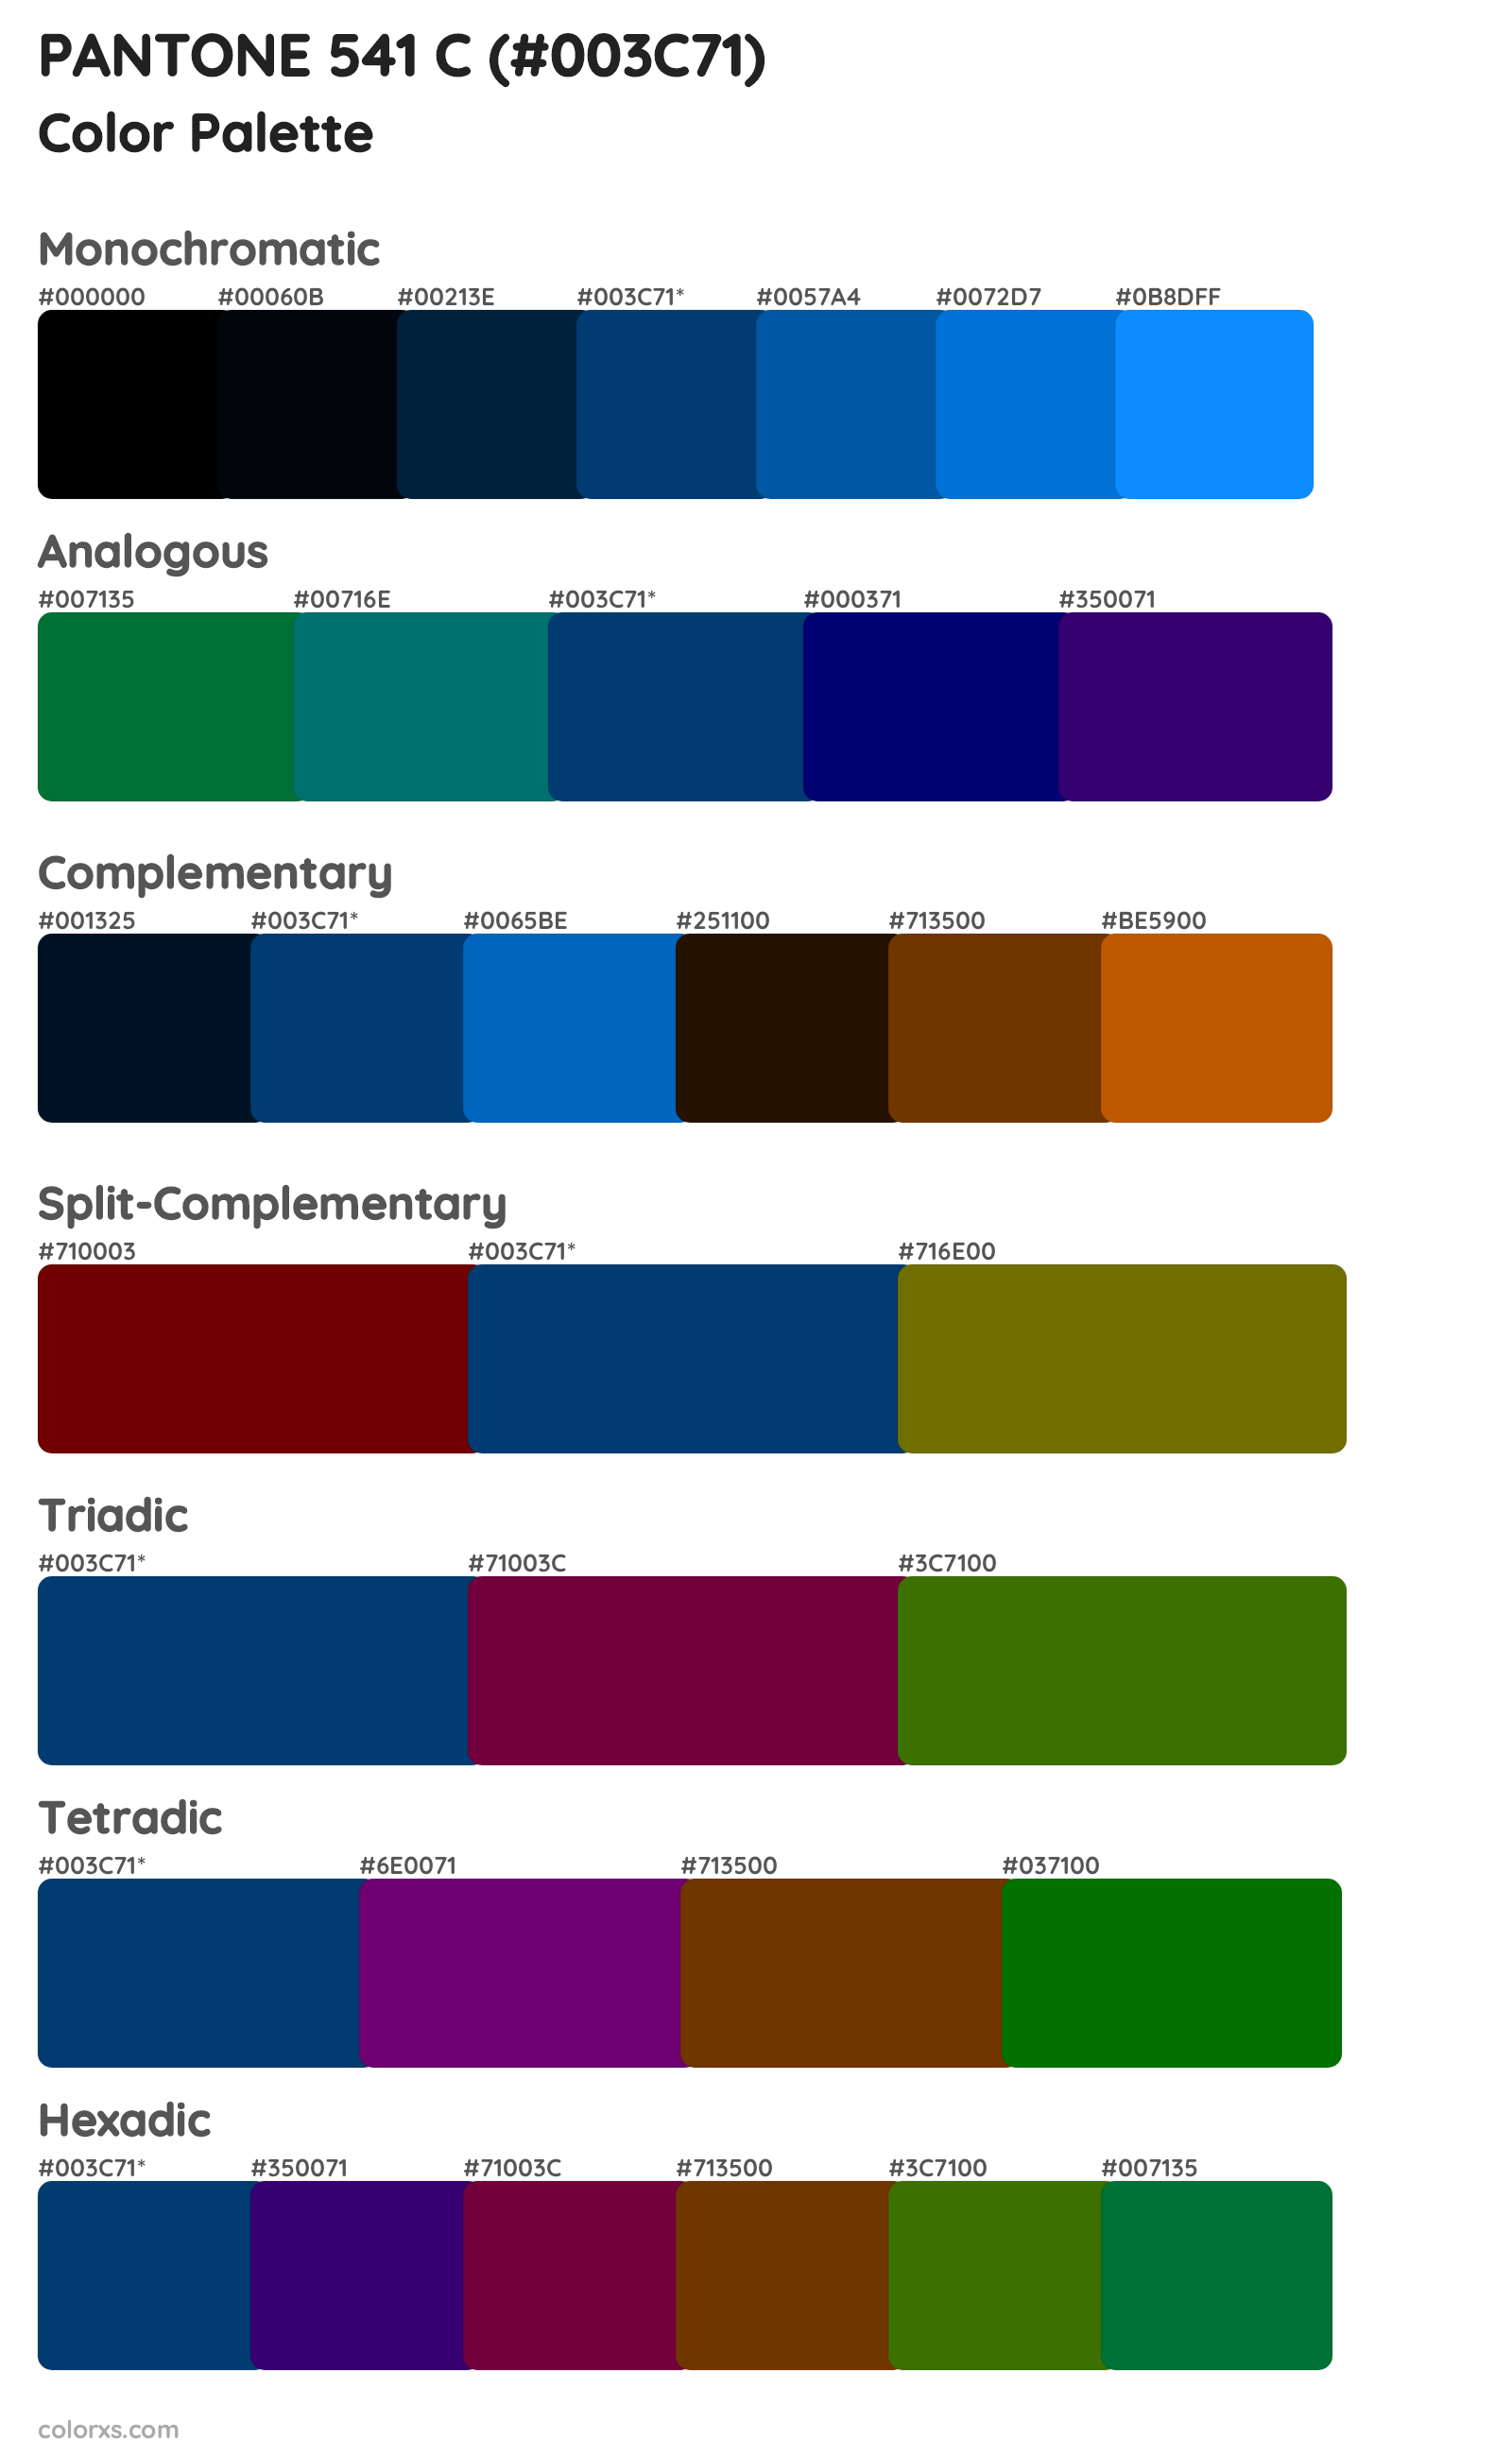 PANTONE 541 C Color Scheme Palettes